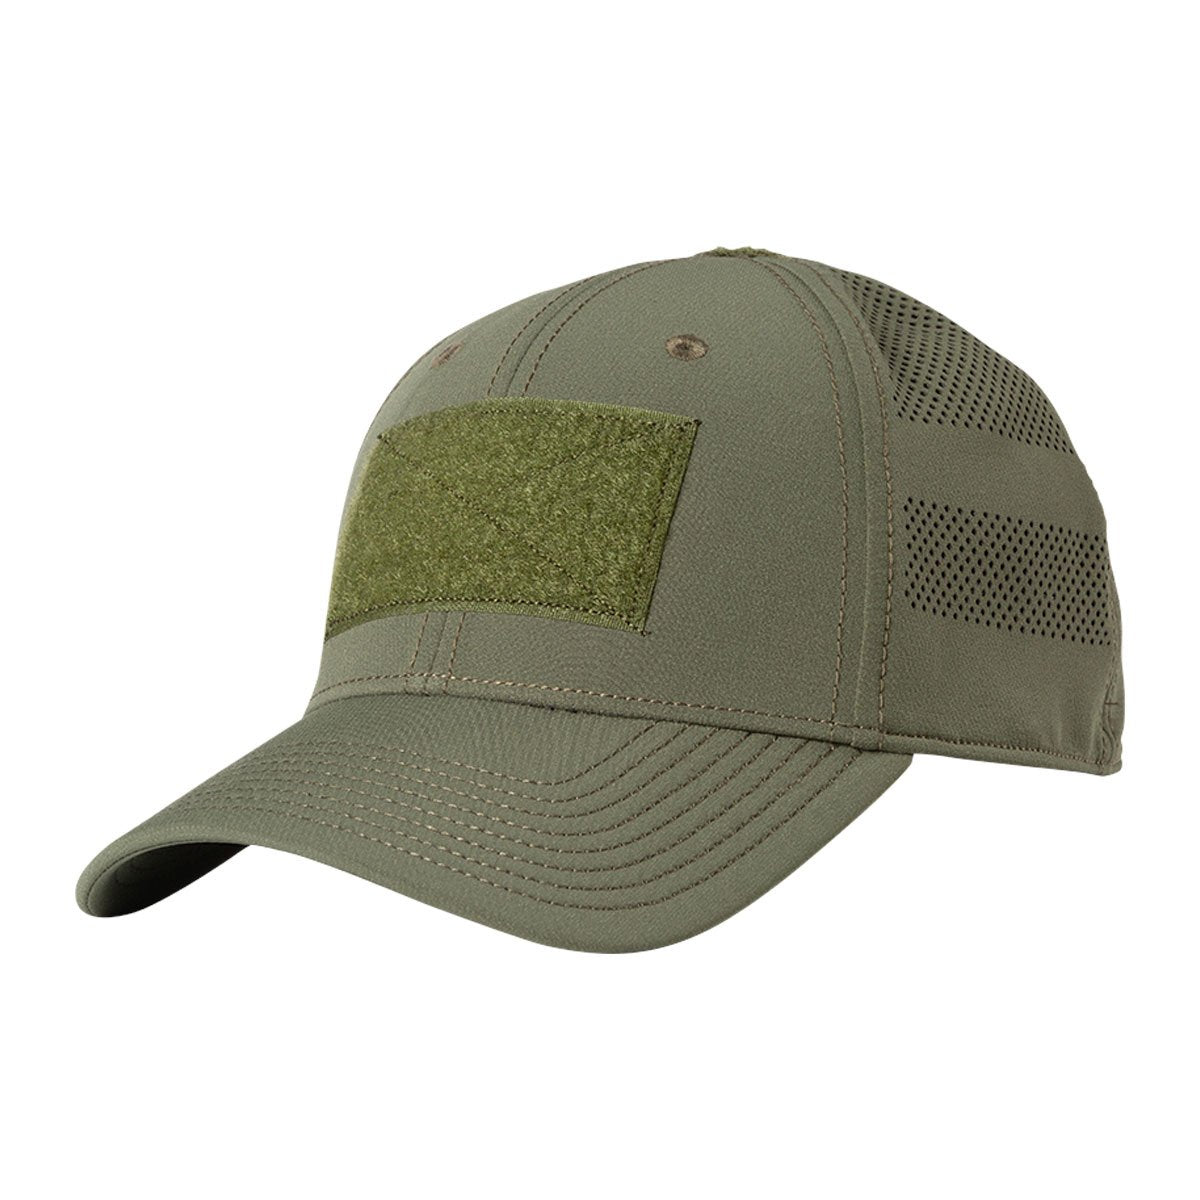 5.11 Tactical Vent-Tac Hat Green Accessories 5.11 Tactical Medium/Large Tactical Gear Supplier Tactical Distributors Australia